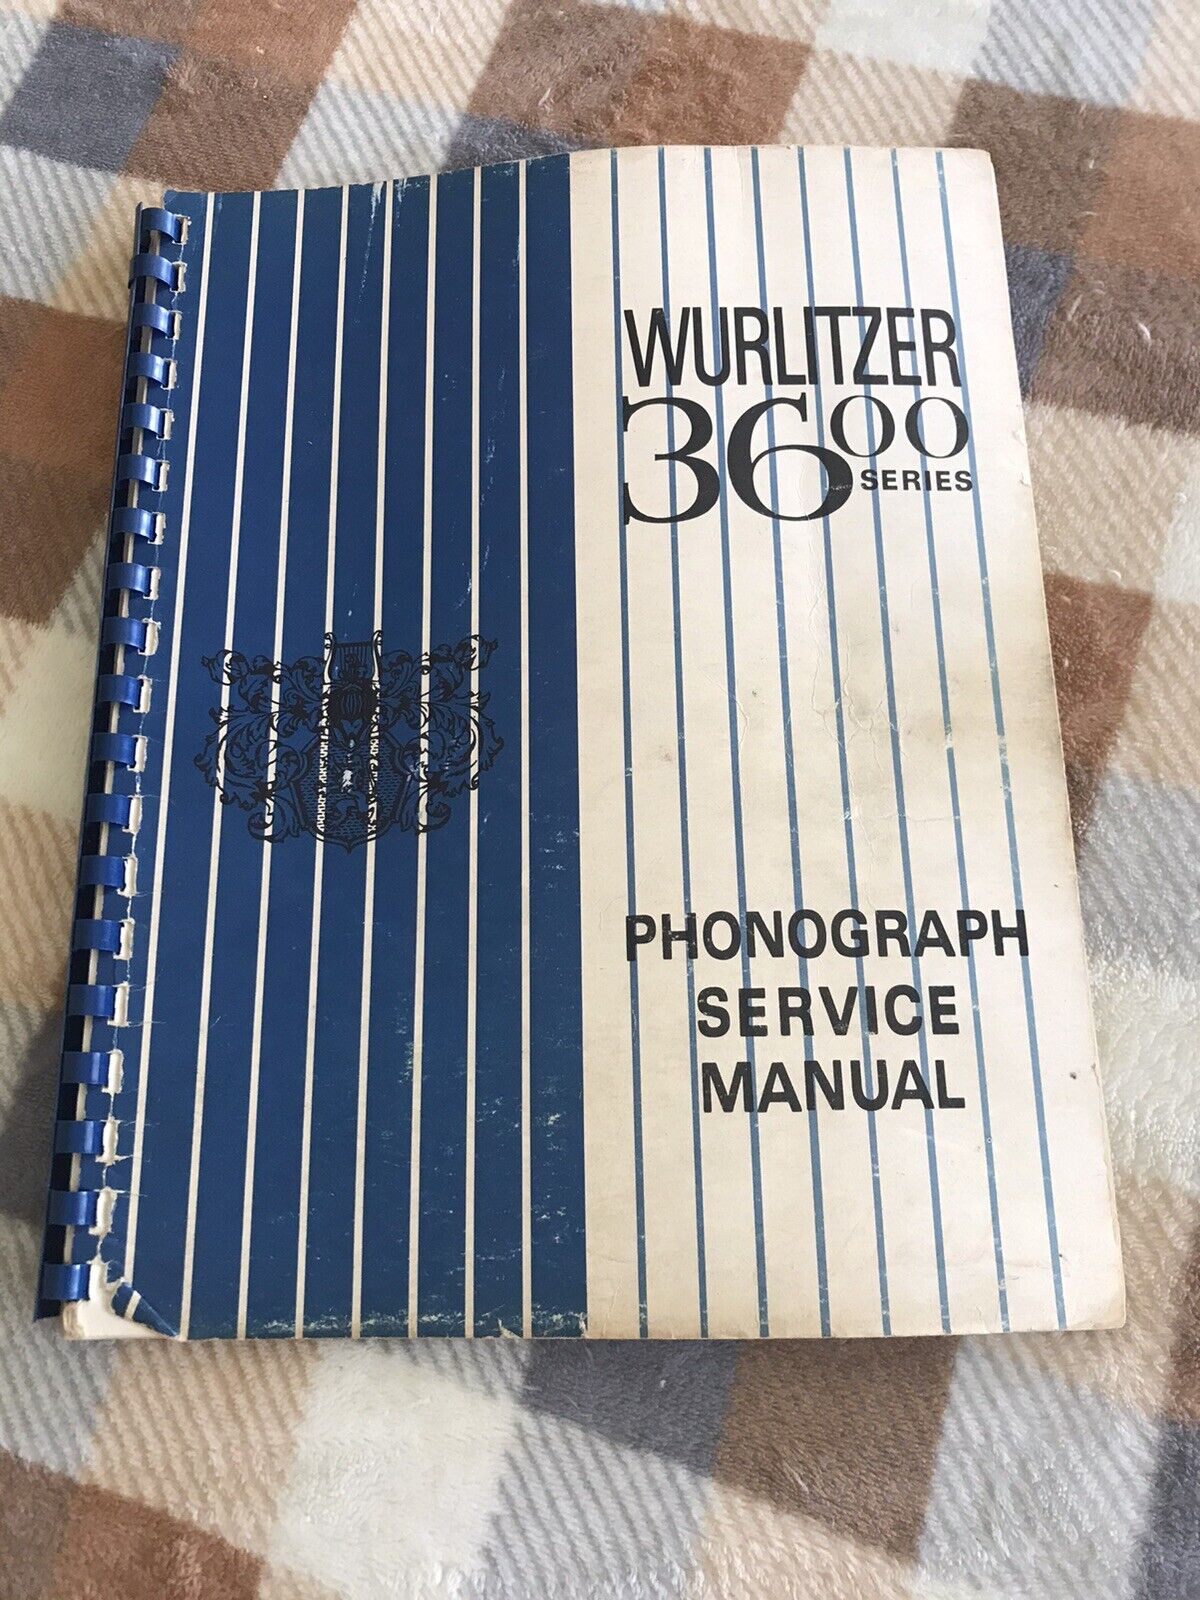 Original Wurlitzer 3600 Series Jukebox Service Manual & Wiring Diagrams